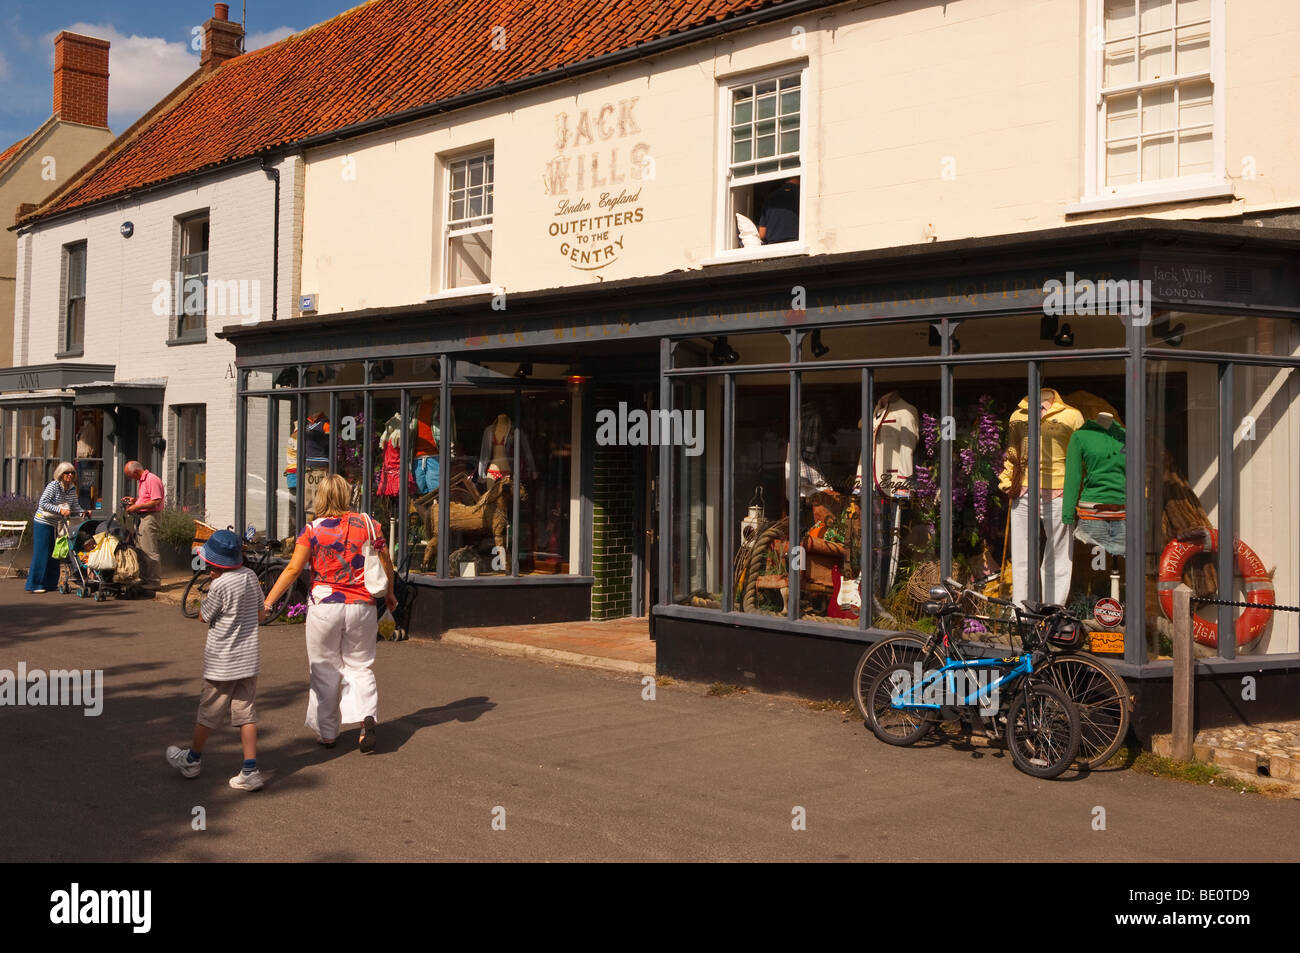 Jack Wills shop store in The Popular North Norfolk village of Burnham Market in Norfolk Uk Stock Photo